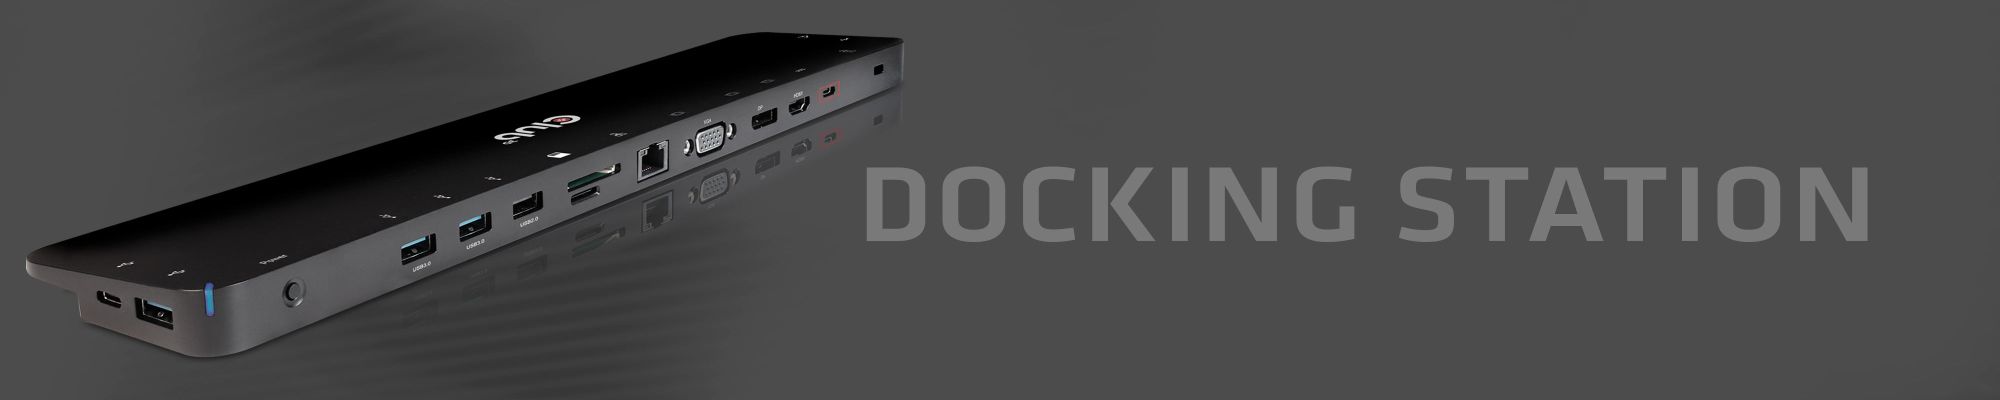 USB3.2 Gen1 UHD 4K Docking Station DisplayLink® Certified